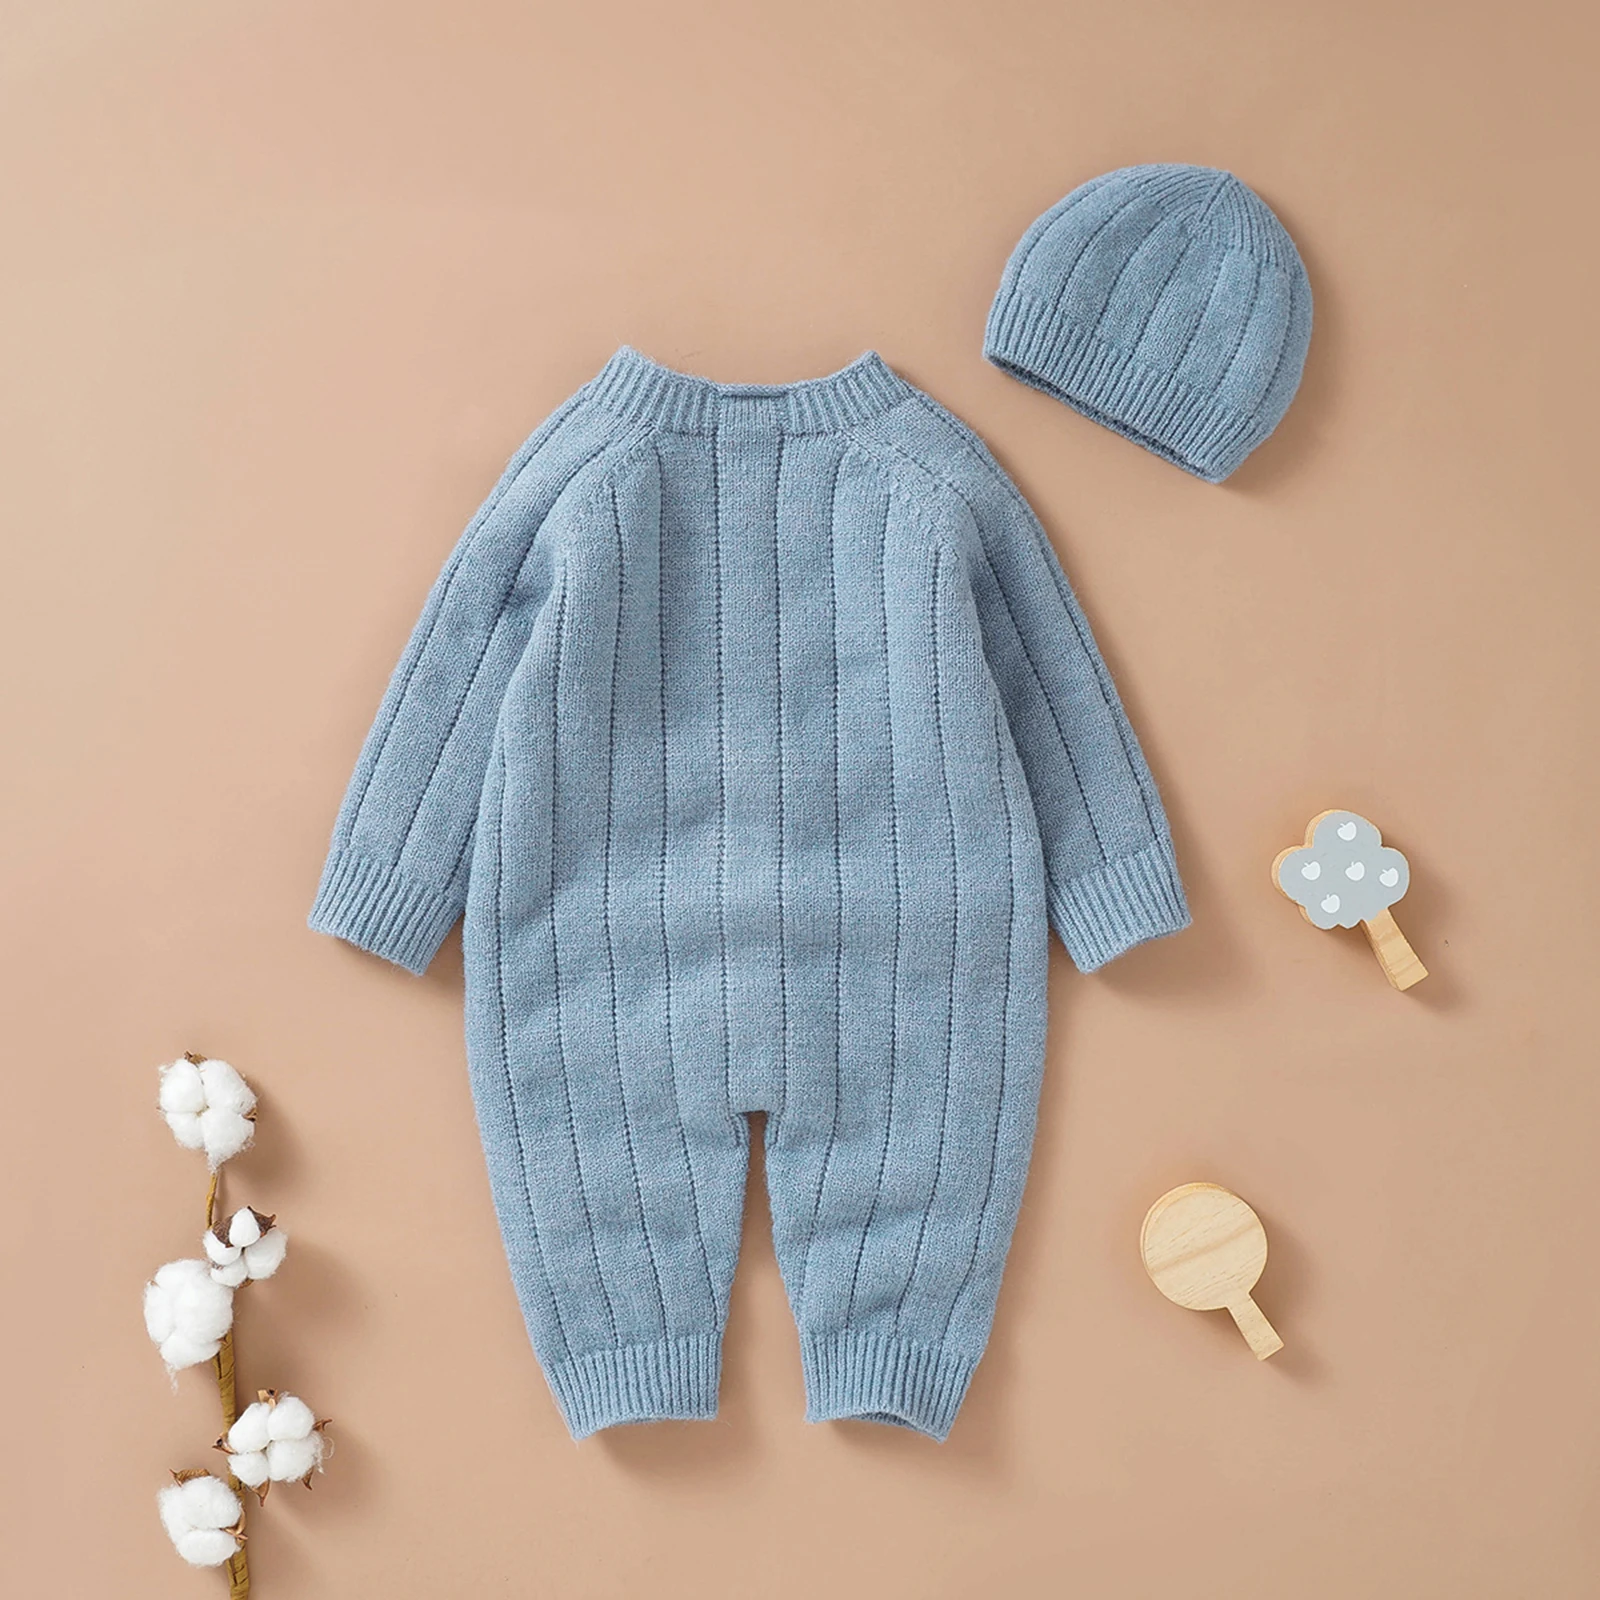 Pudcoco תינוק בייבי בנות בנים החורף סרבל וכובע, מוצק צבע השרוול הארוך אחת עם חזה סרוגים רומפר, 0-18 חודשים.5